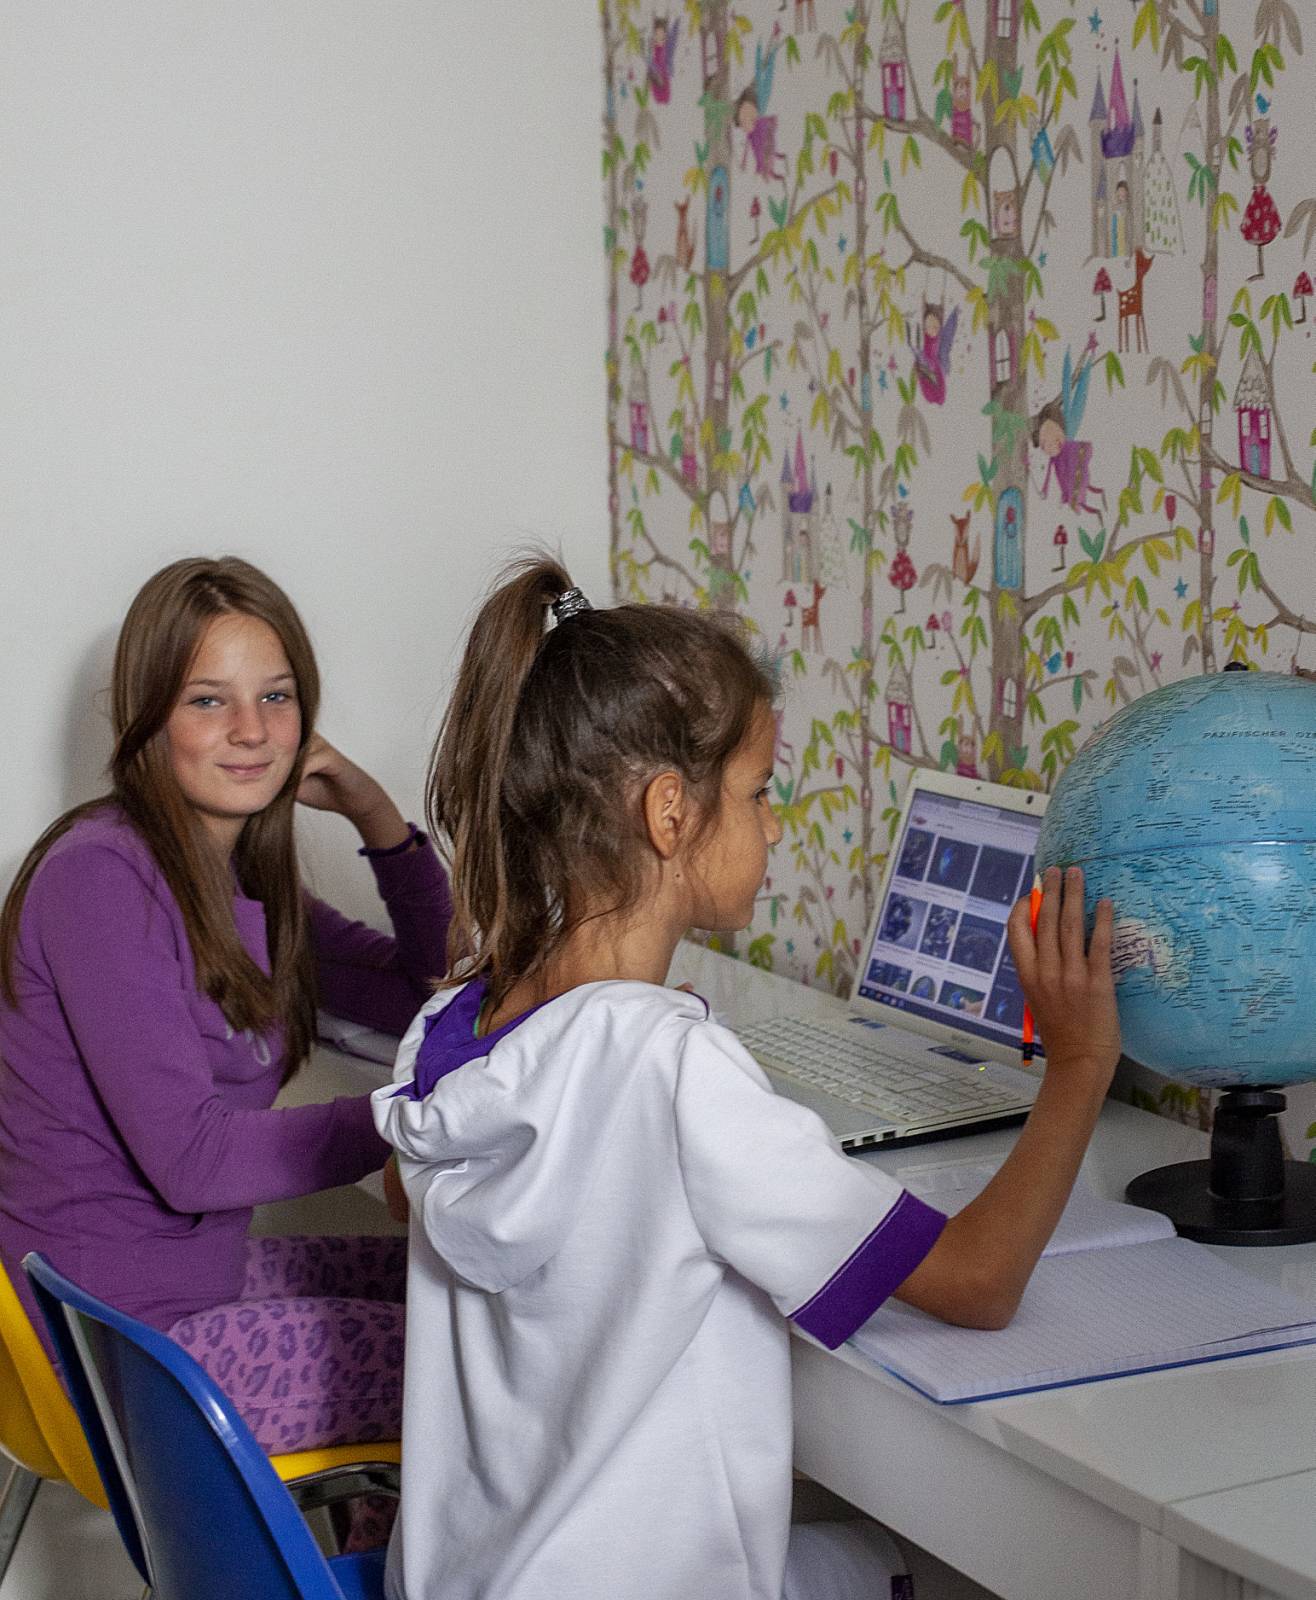 djevojčice u učionici drže globus